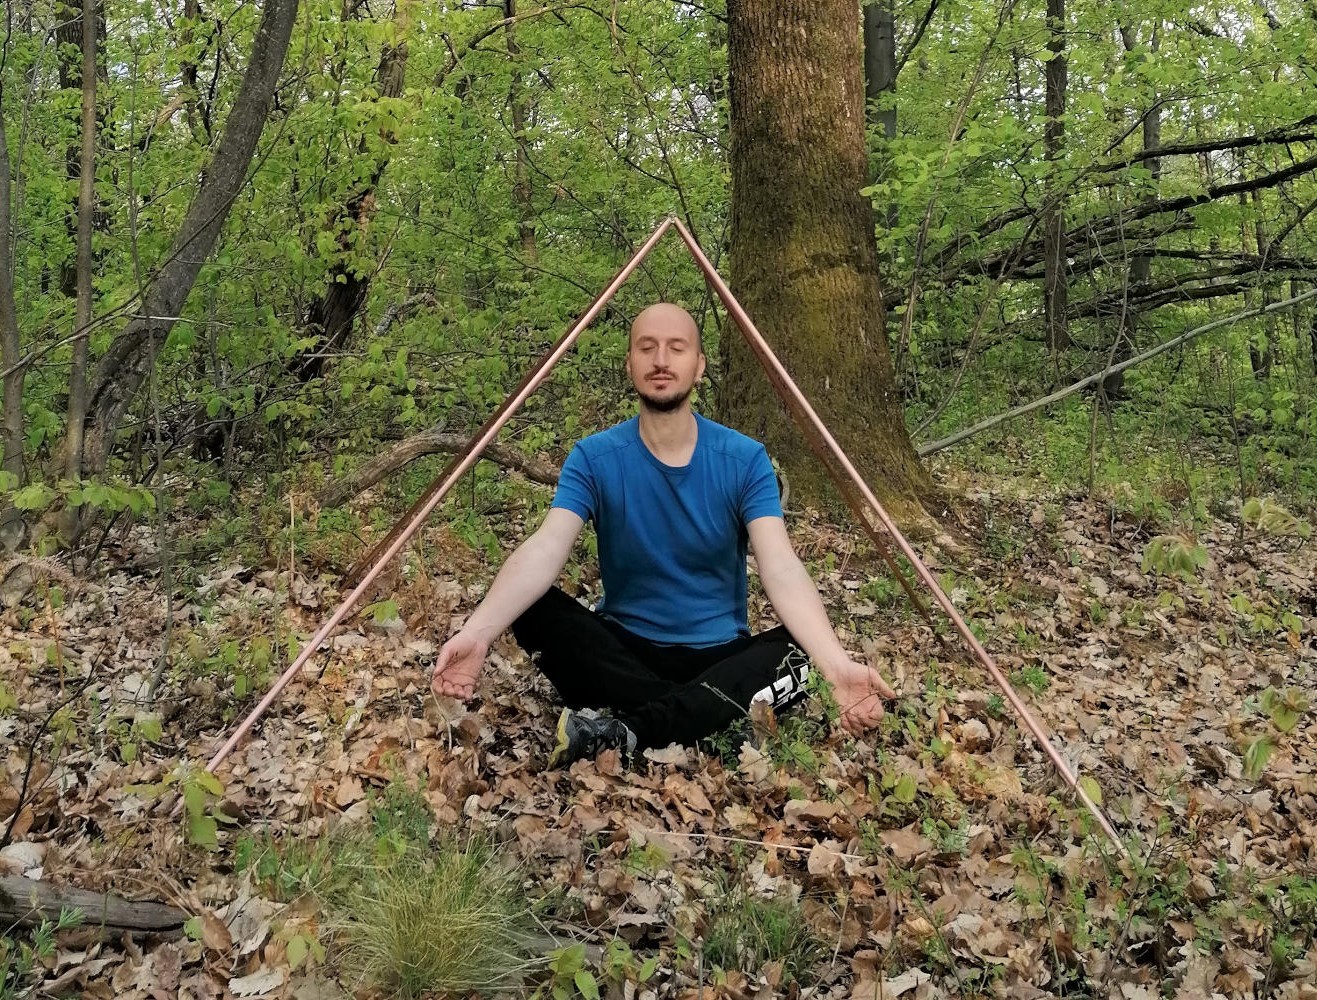 Meditation pyramid - Primal Wonders